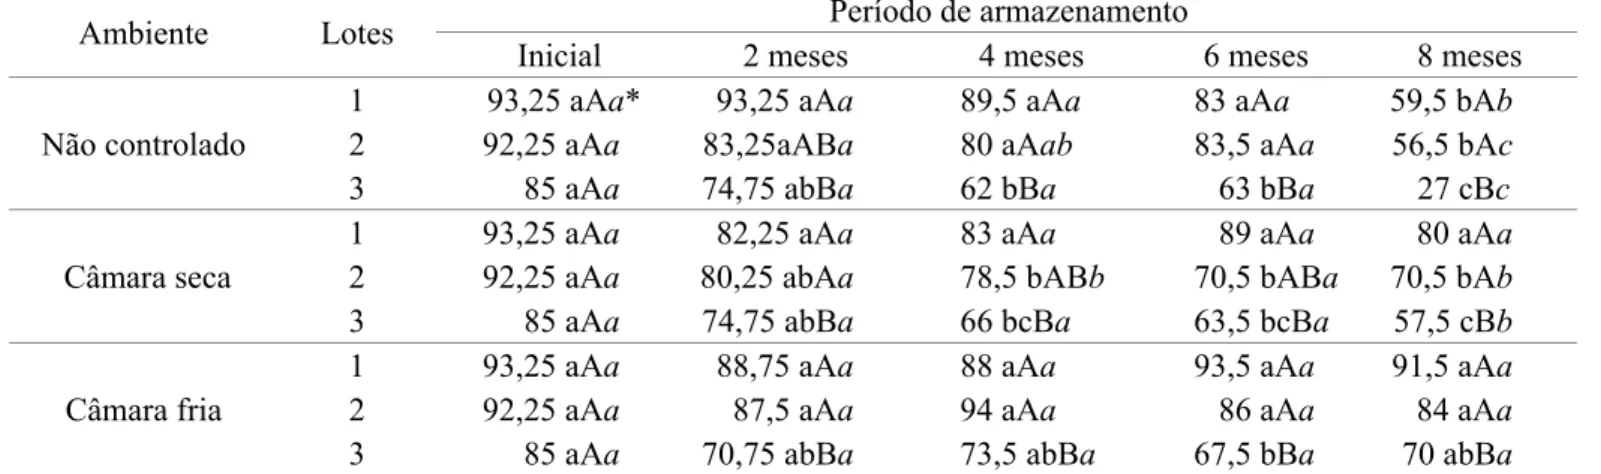 TABELA 4. Resultados médios de emergência de plântulas em campo, em percentagem, para os três lotes de sementes  de soja do cultivar TMG113-RR, durante 5 épocas de avaliação, armazenados em diferentes condições  ambientais